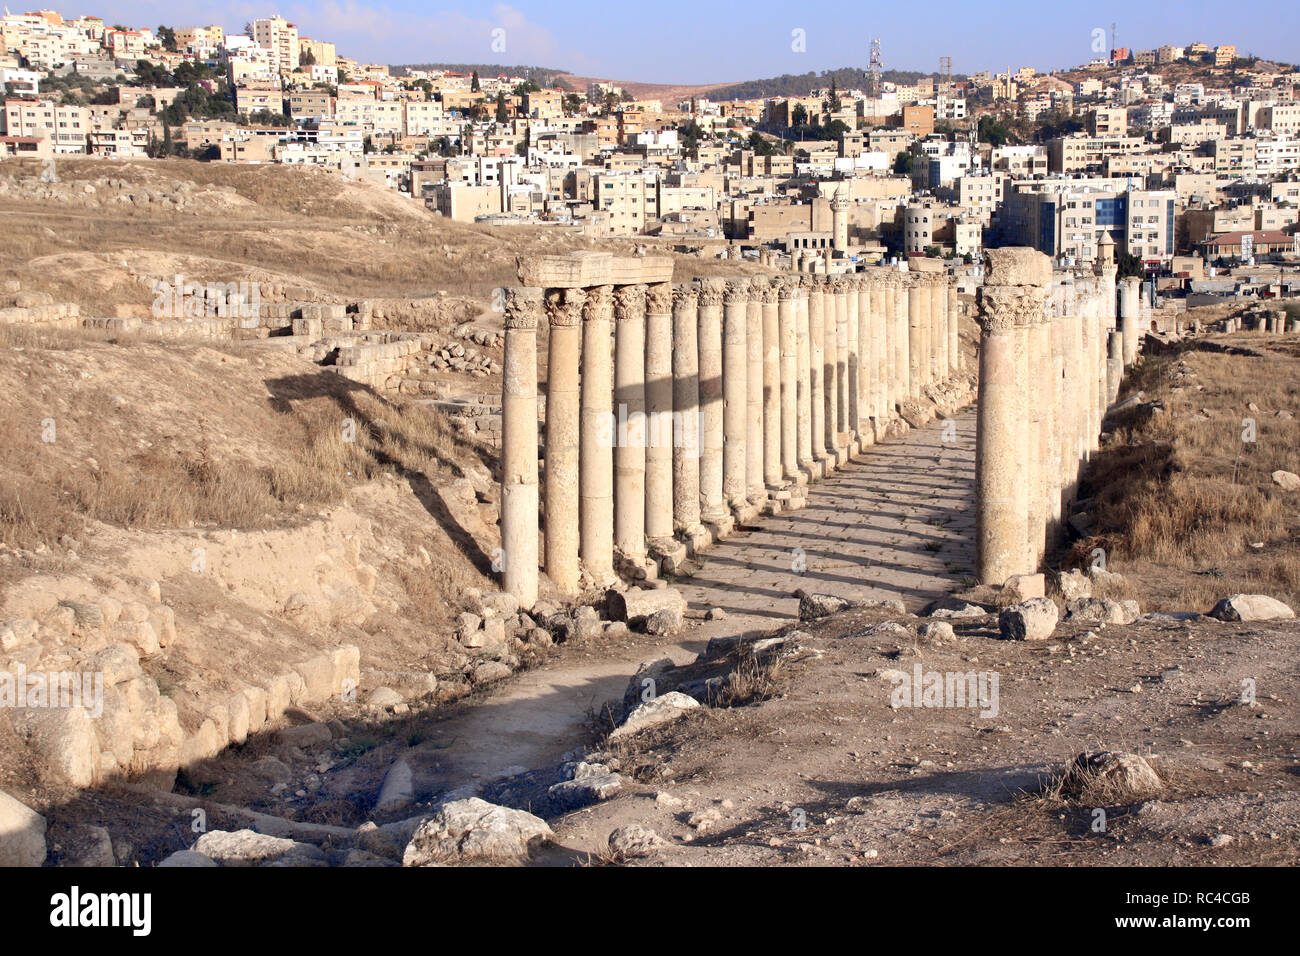 Vieille rue avec colonnes de Gérasa (Jerash), ancienne capitale romaine et la plus grande ville du gouvernorat de Jerash, Jordanie, Moyen-Orient. UNESCO World Heritage s Banque D'Images